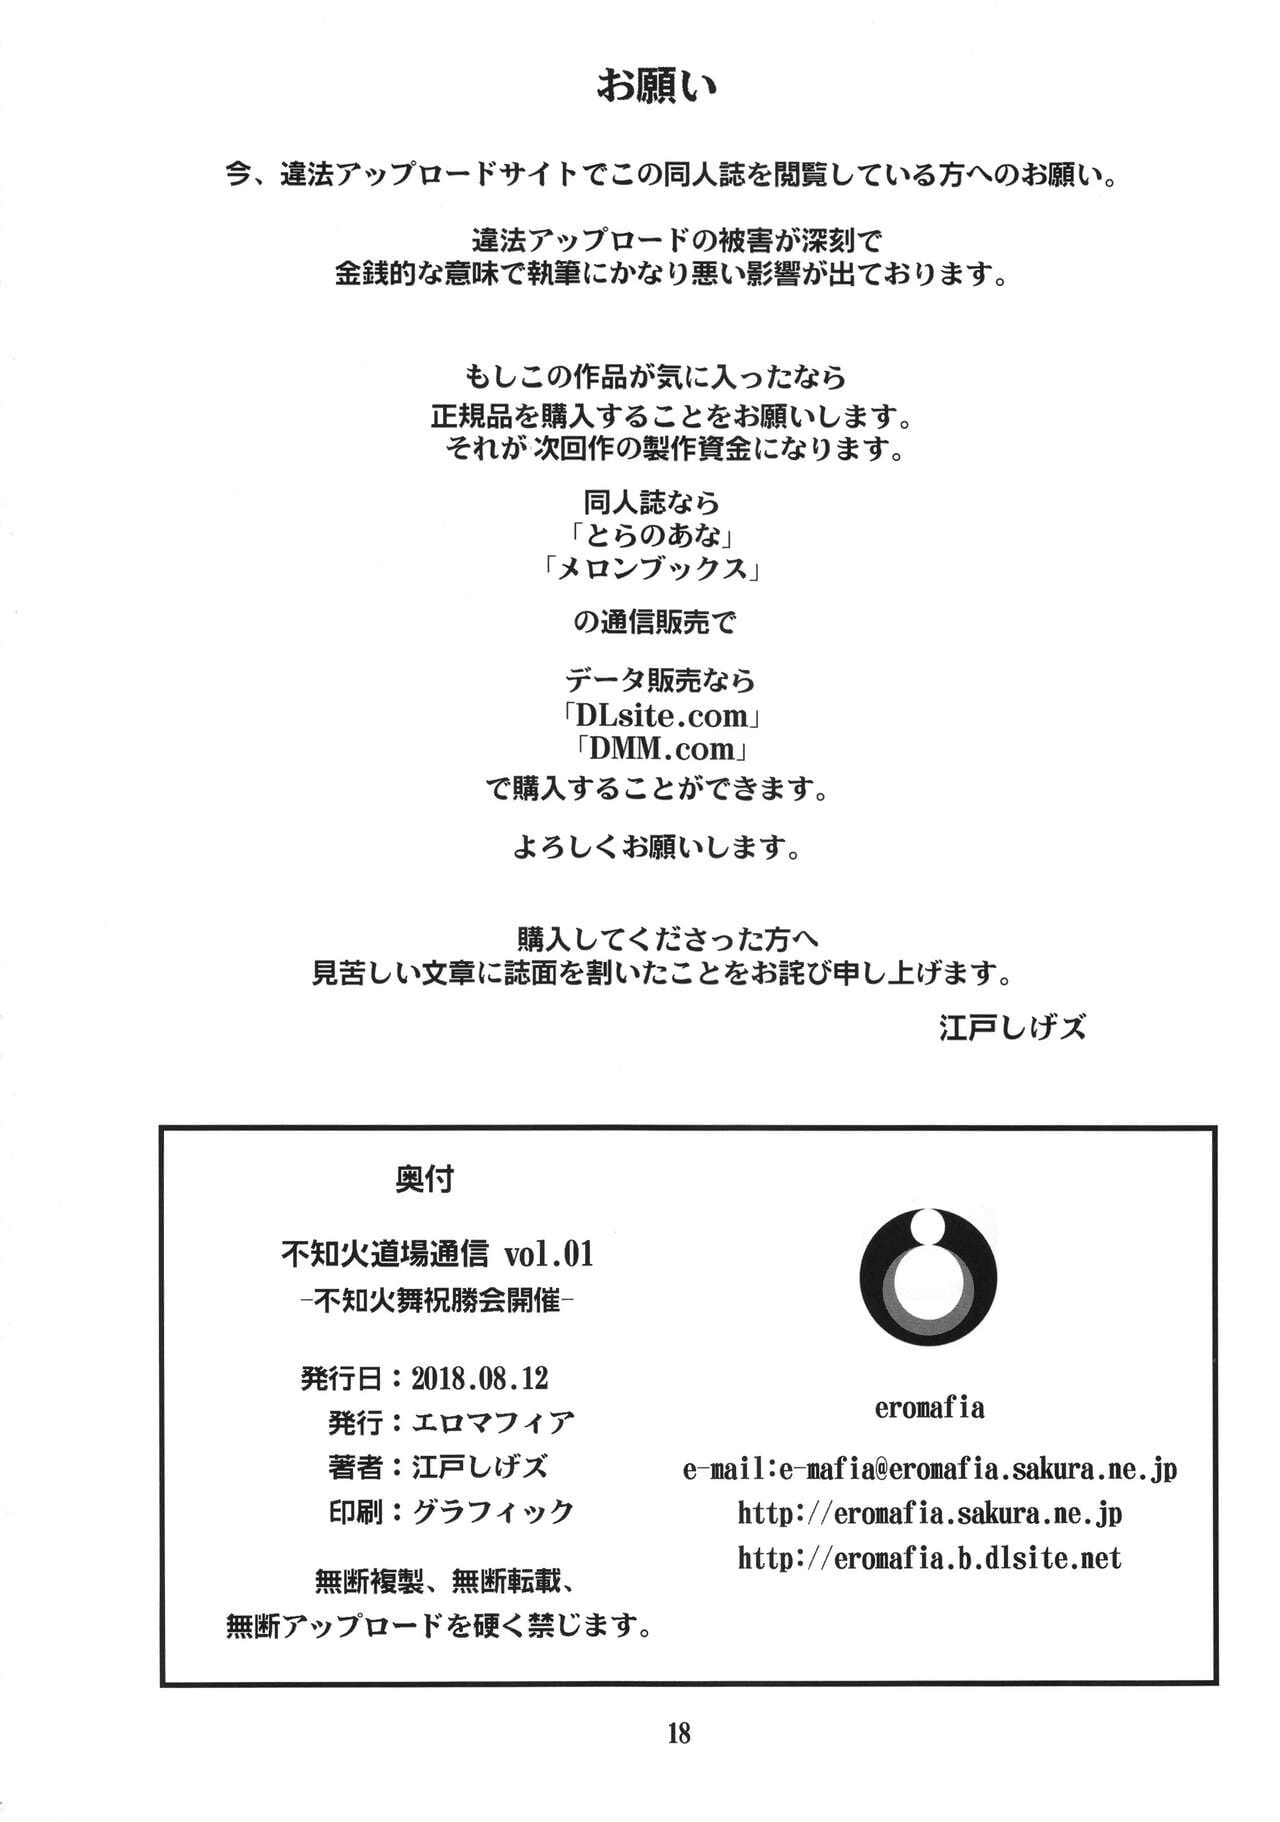 Shiranui Doujou Tsuushin Vol. 01 -Shiranui Mai Shukushoukai Kaisai- page 1